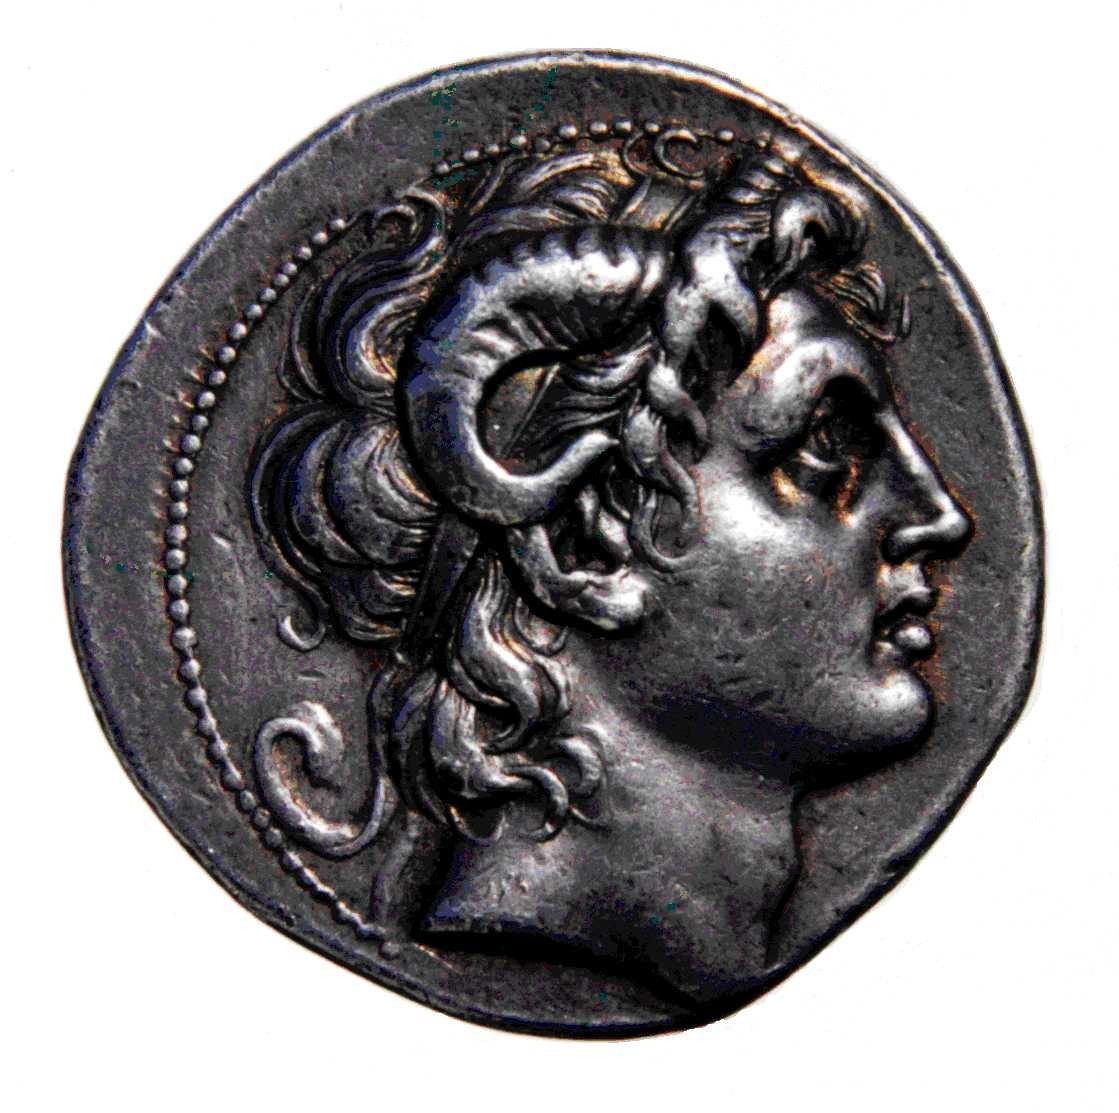 Alexander-Coin.jpg